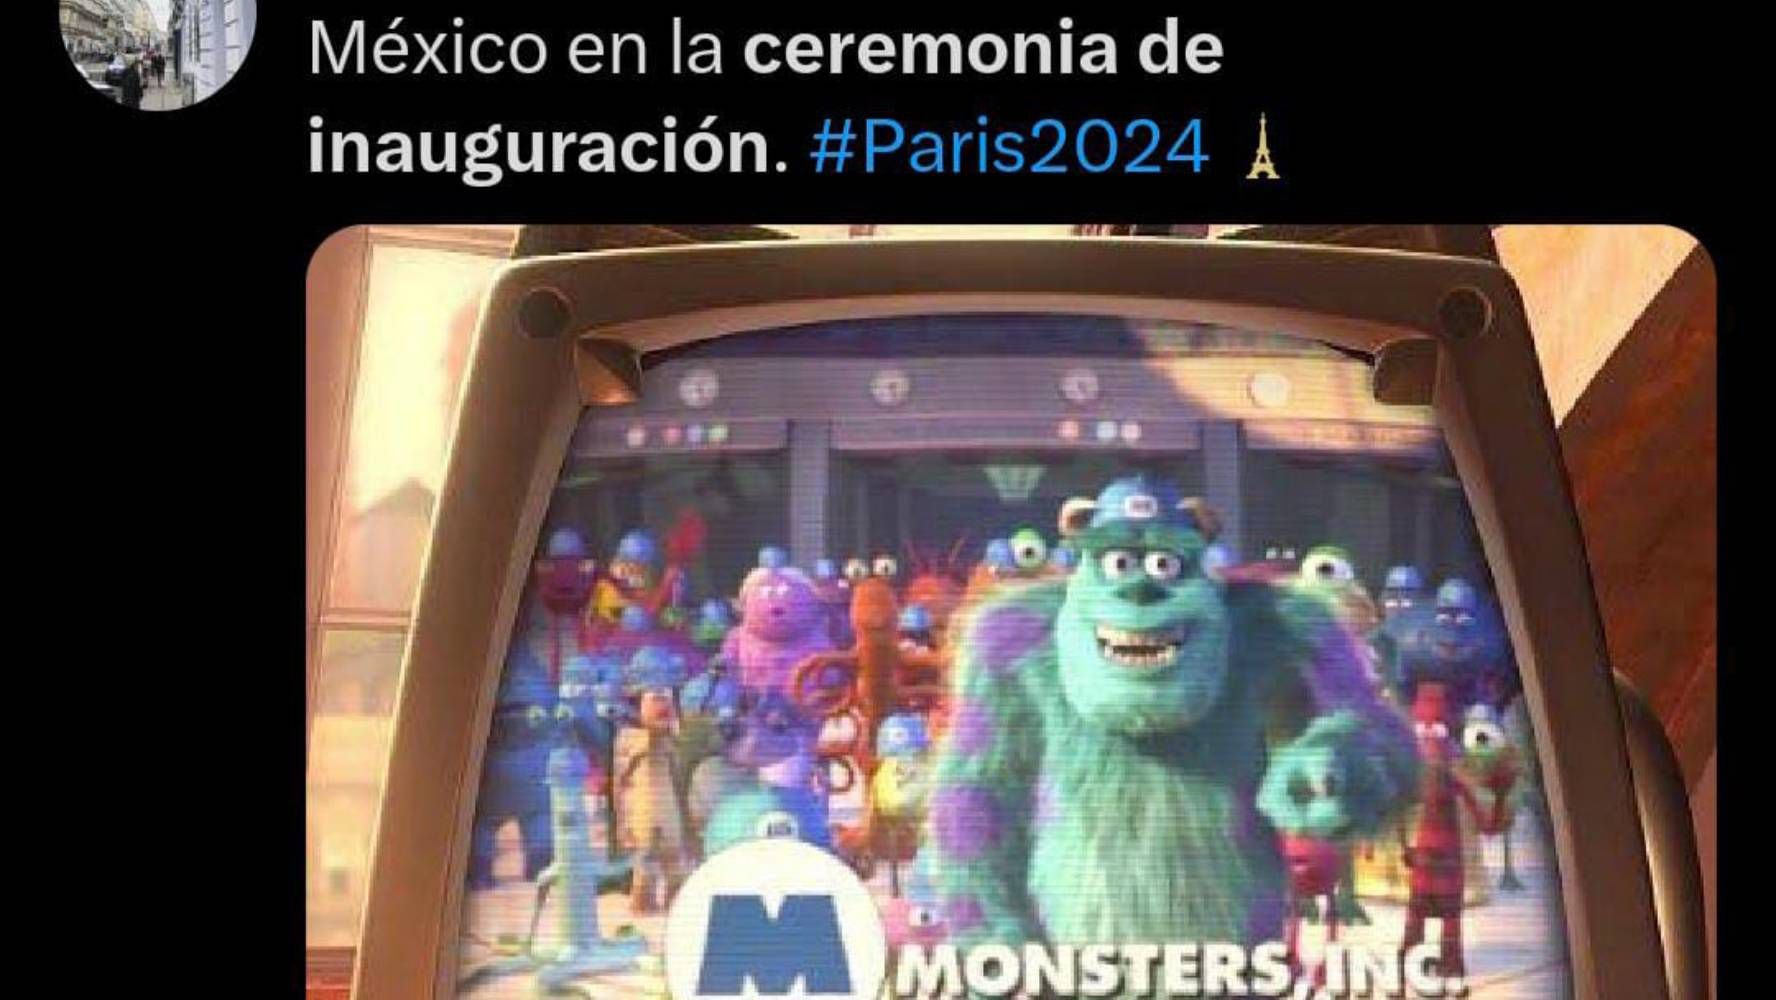 Los memes recordaron el momento divertido de Monsters. Inc (Foto Redes sociales)